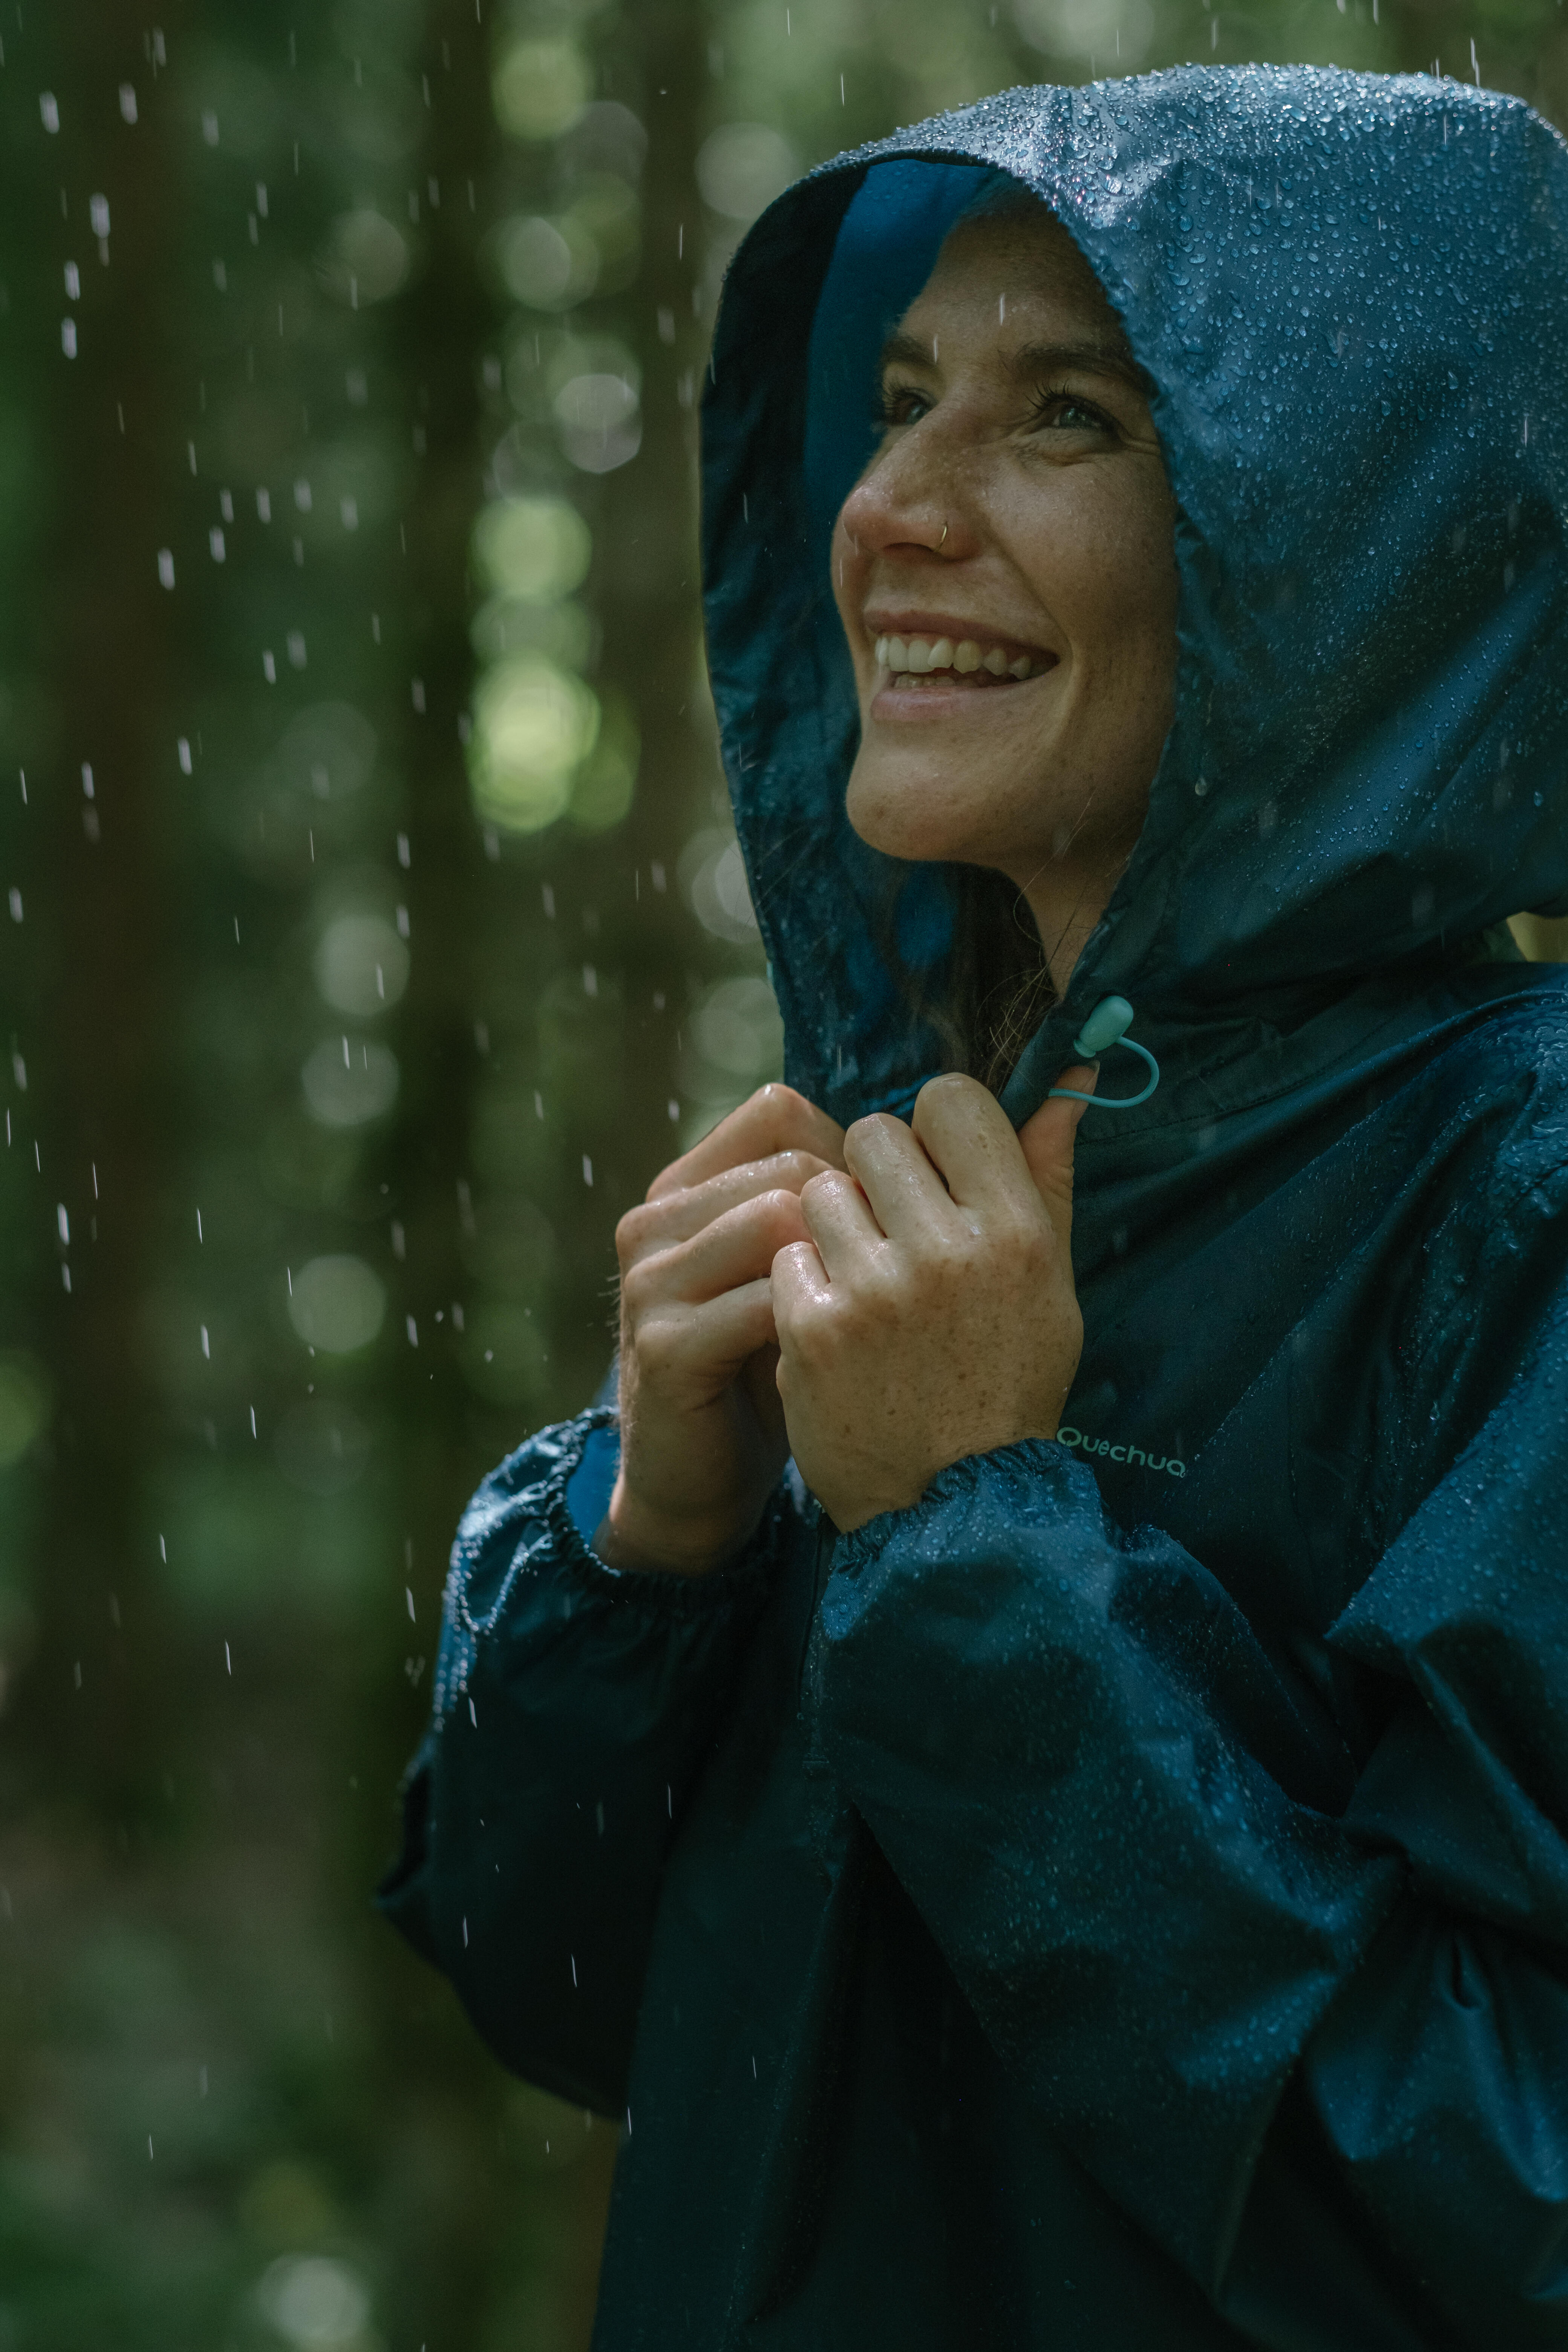 Women’s Hiking Waterproof Jacket - Raincut Blue - QUECHUA